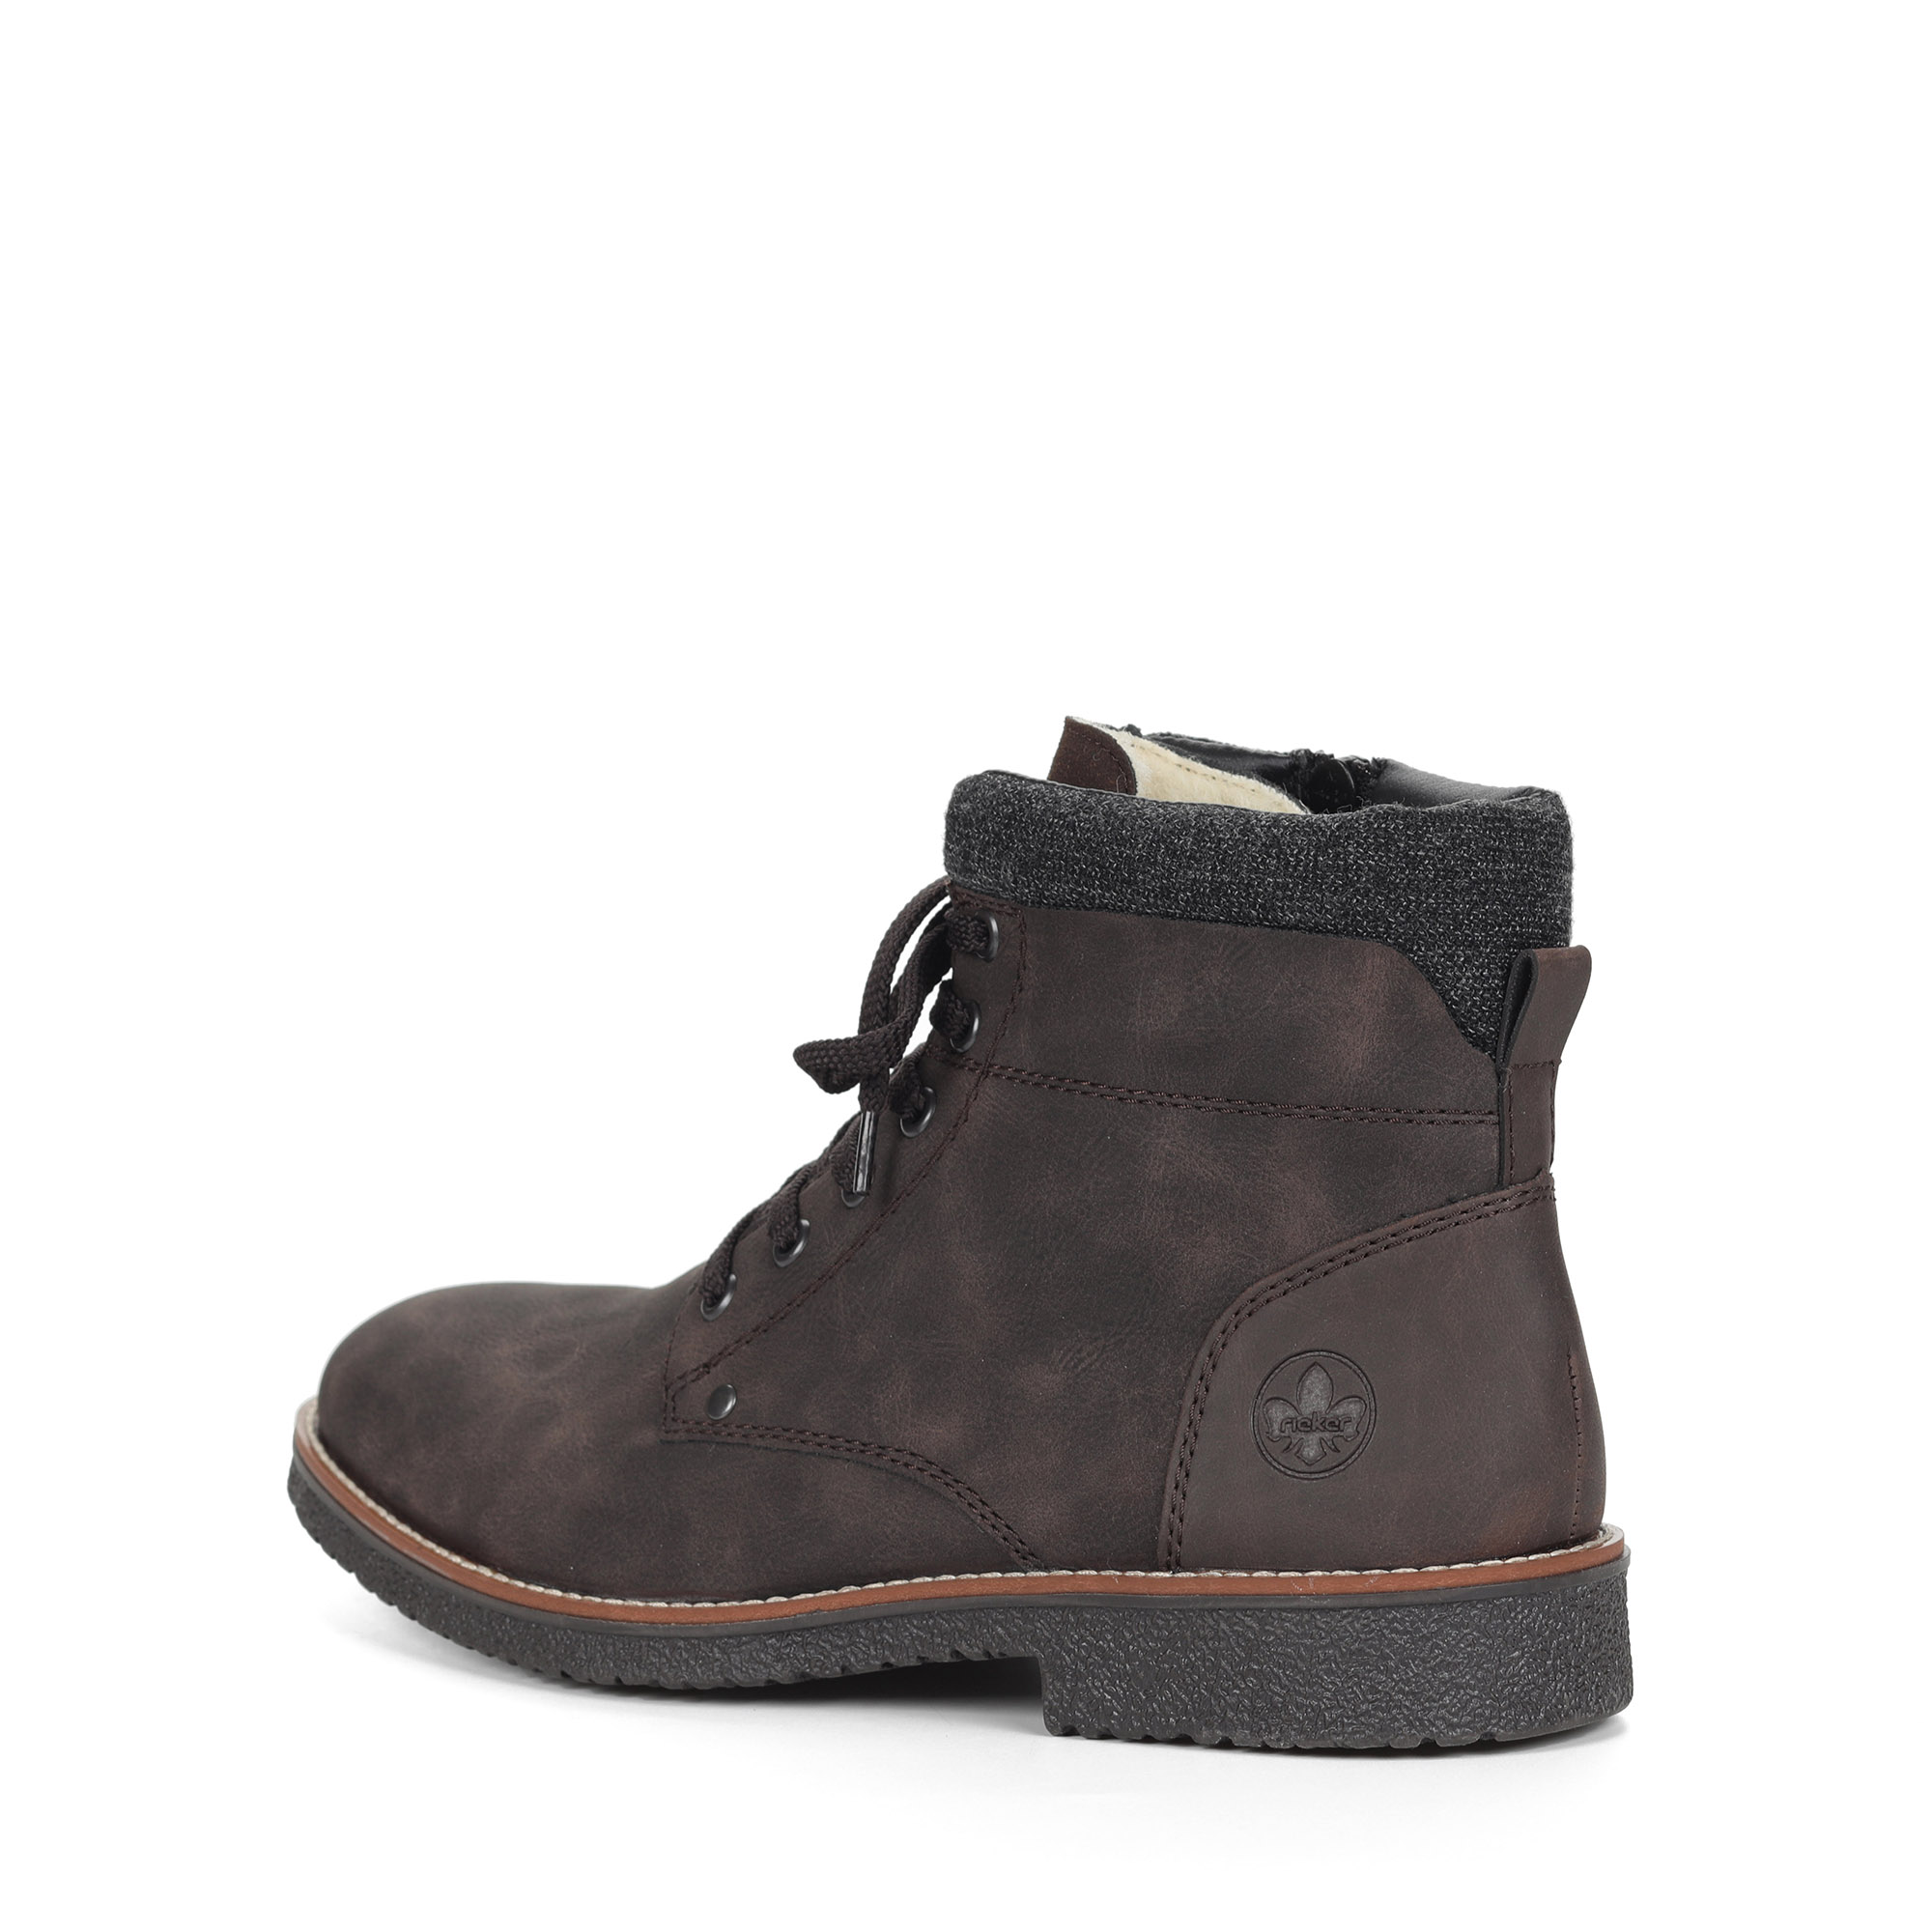 Коричневые ботинки из экокожи на подкладке из натуральной шерсти на шнурках Rieker, размер 43, цвет коричневый - фото 4